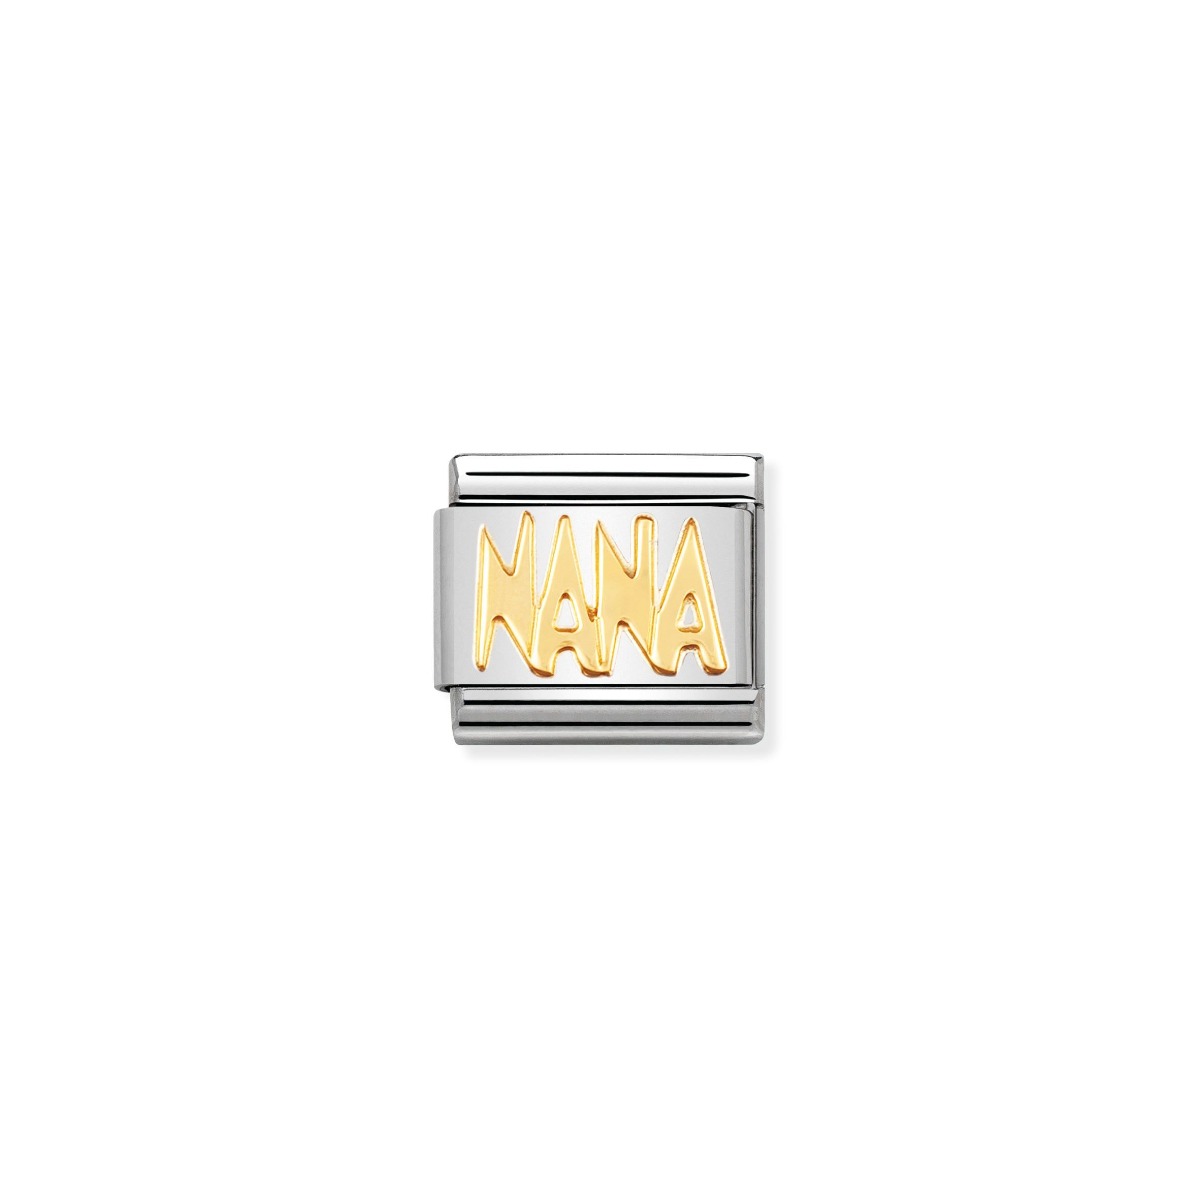 Nomination Classic Nana Charm - 18k Gold - 030107/09